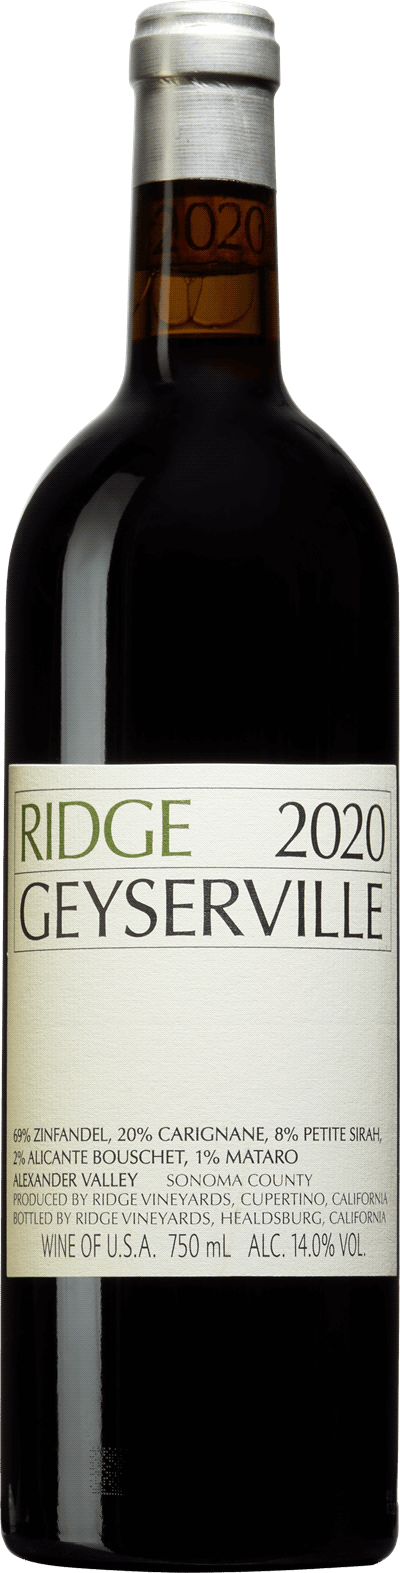 Ridge Geyserville